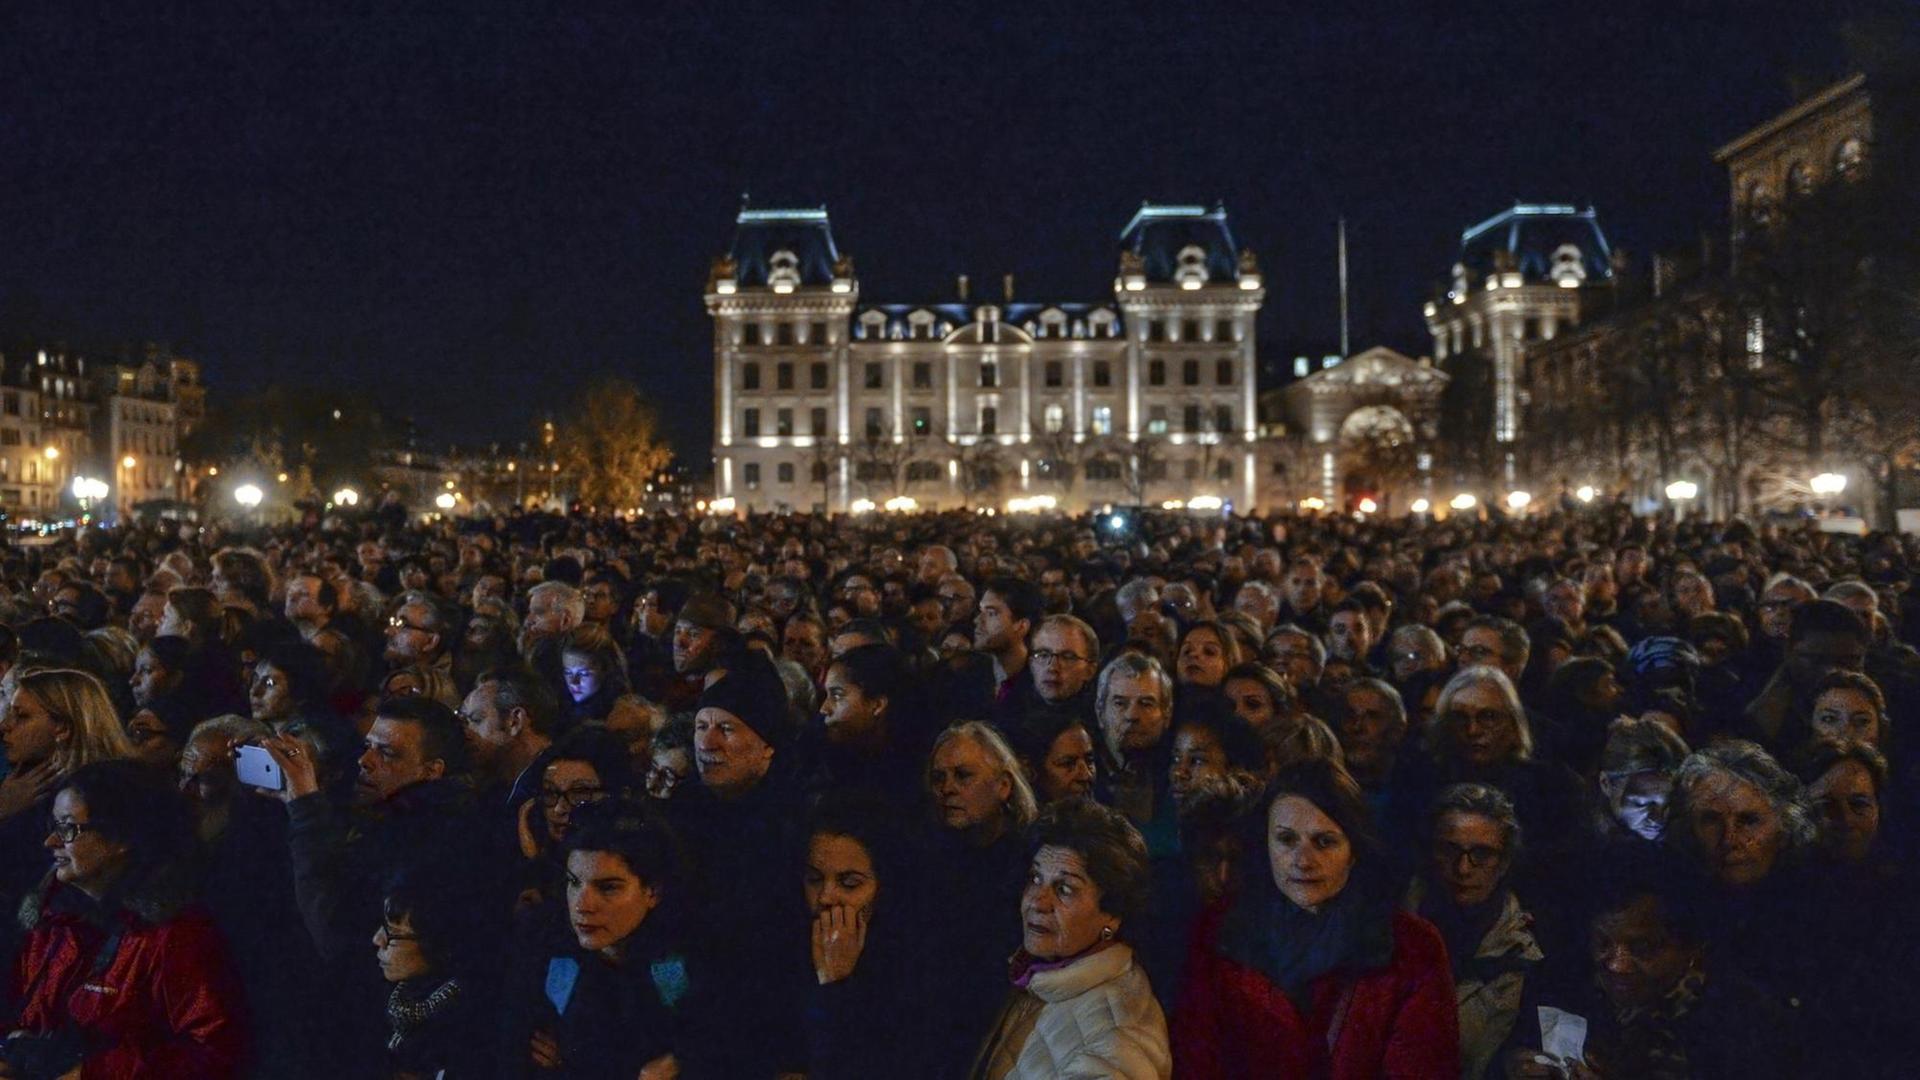 Viele Franzosen gedachten der Opfer der Anschläge vor der Kathedrale Notre Dame in Paris am 15.11.2015.